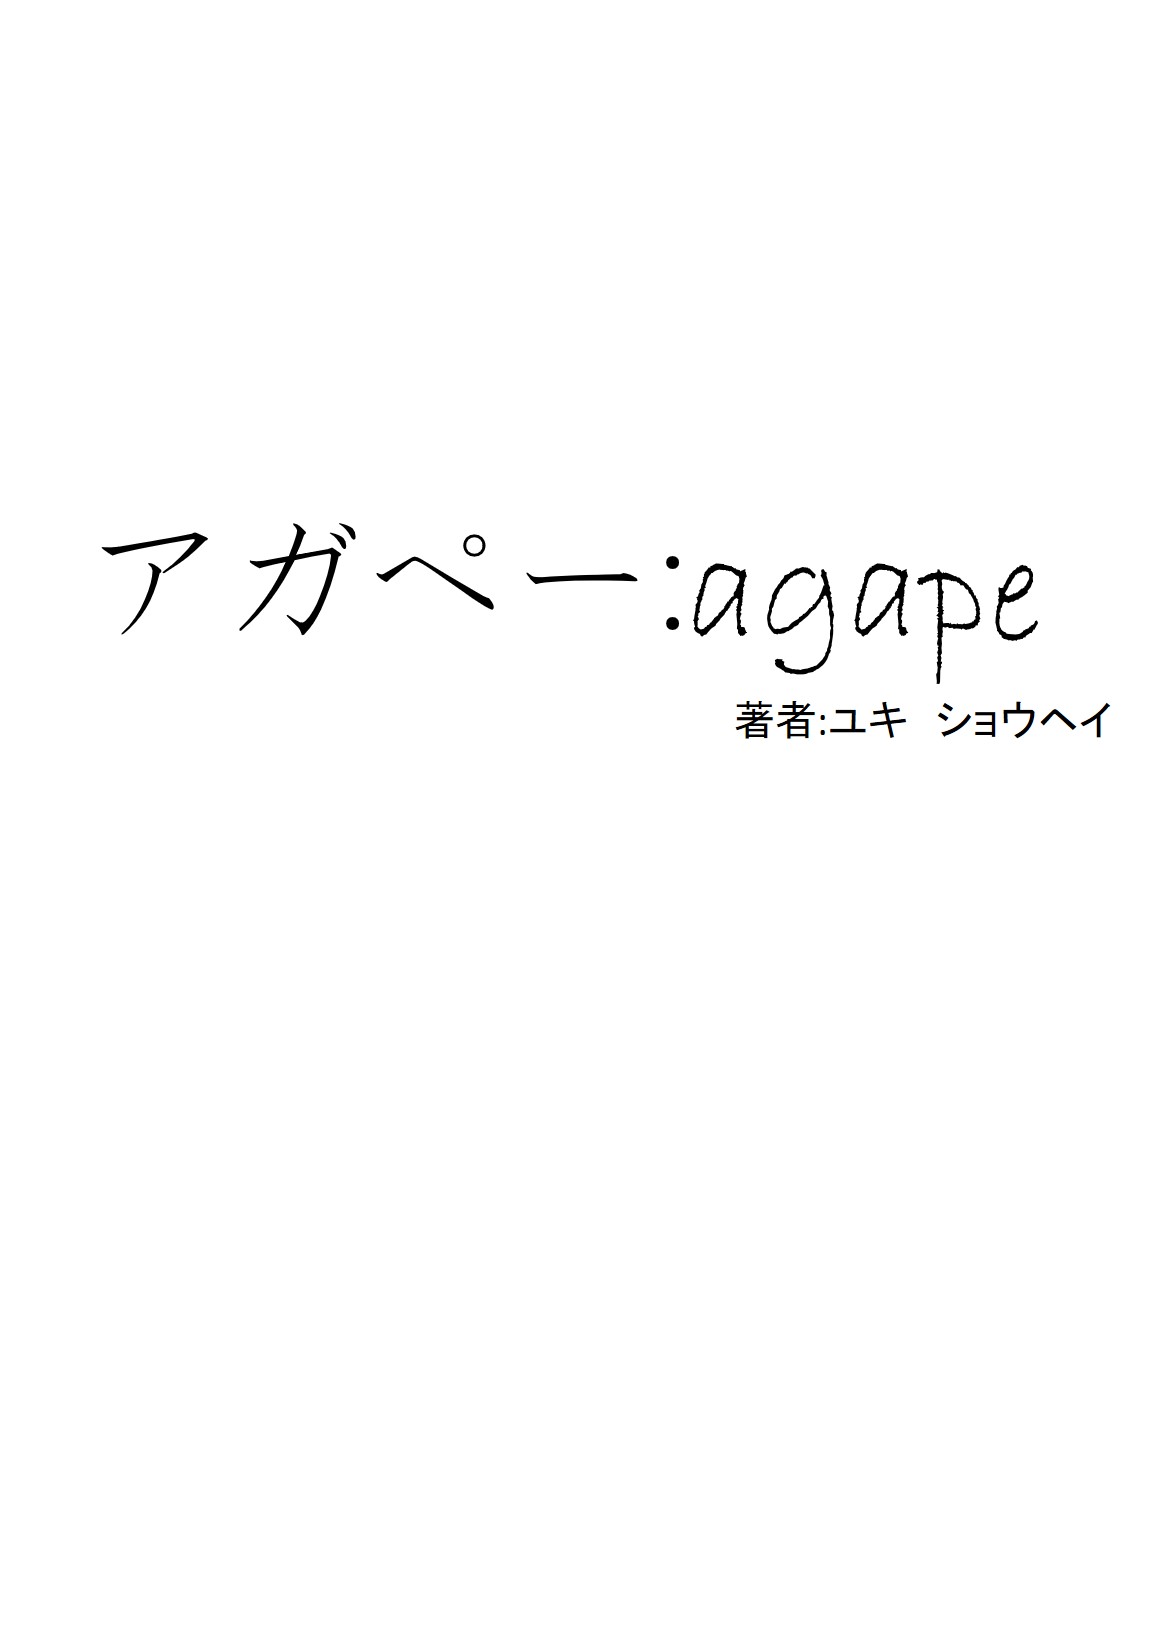 アガペー:agape